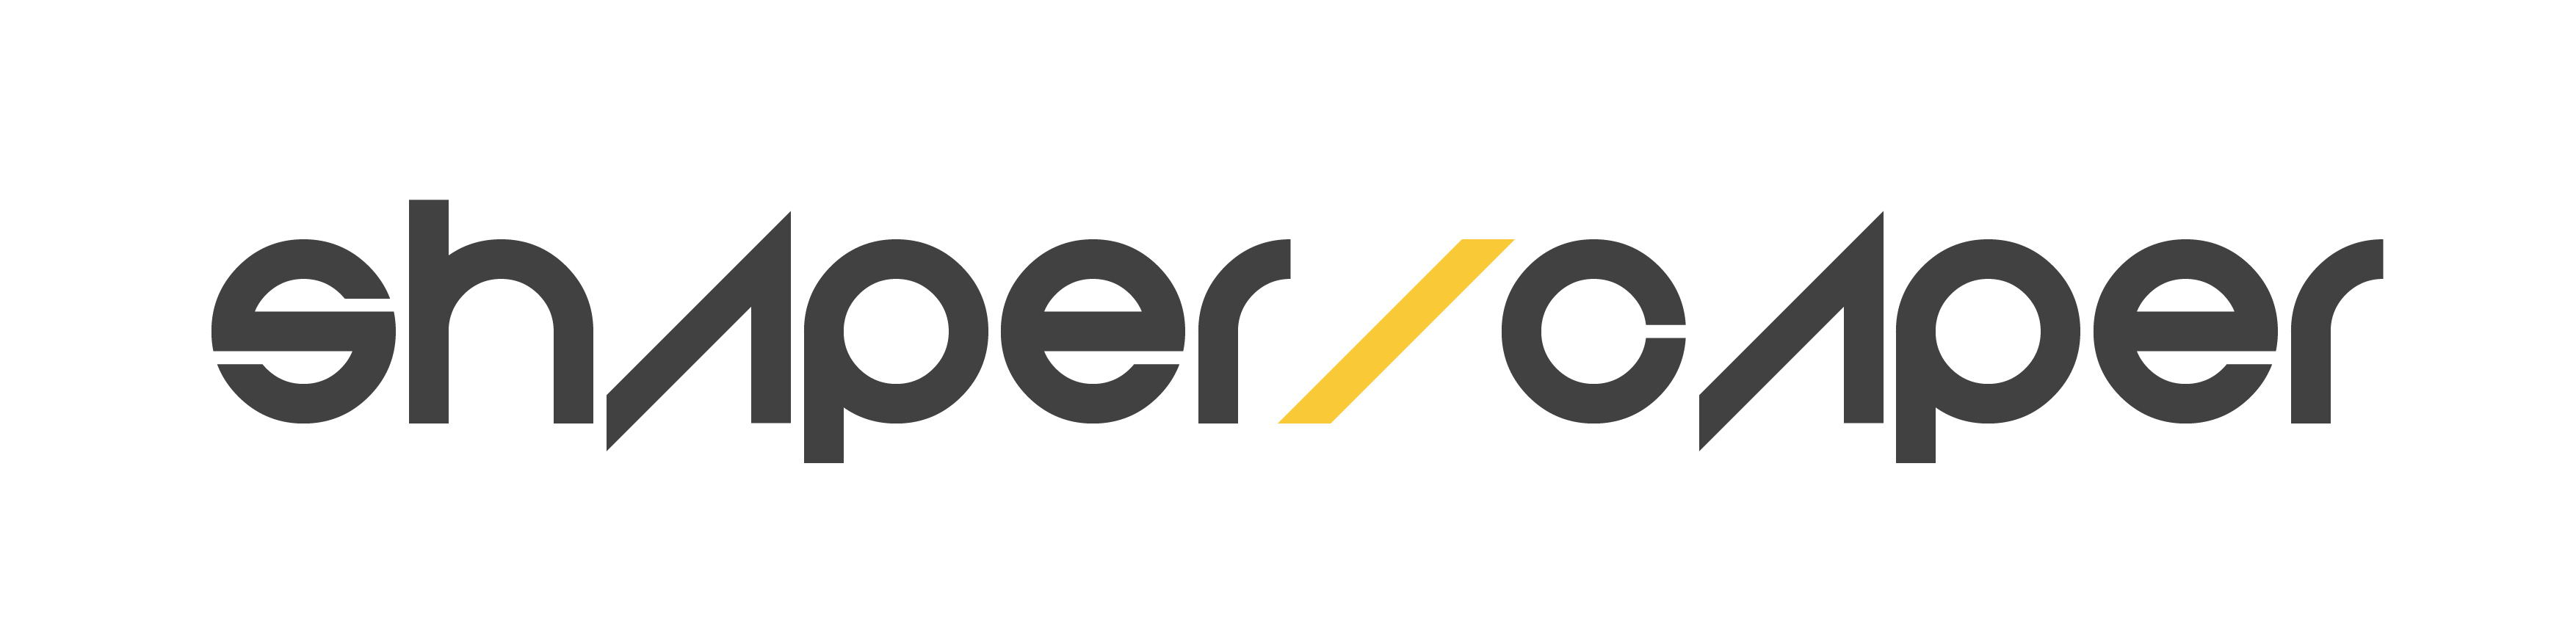 Shaper/Caper Logo